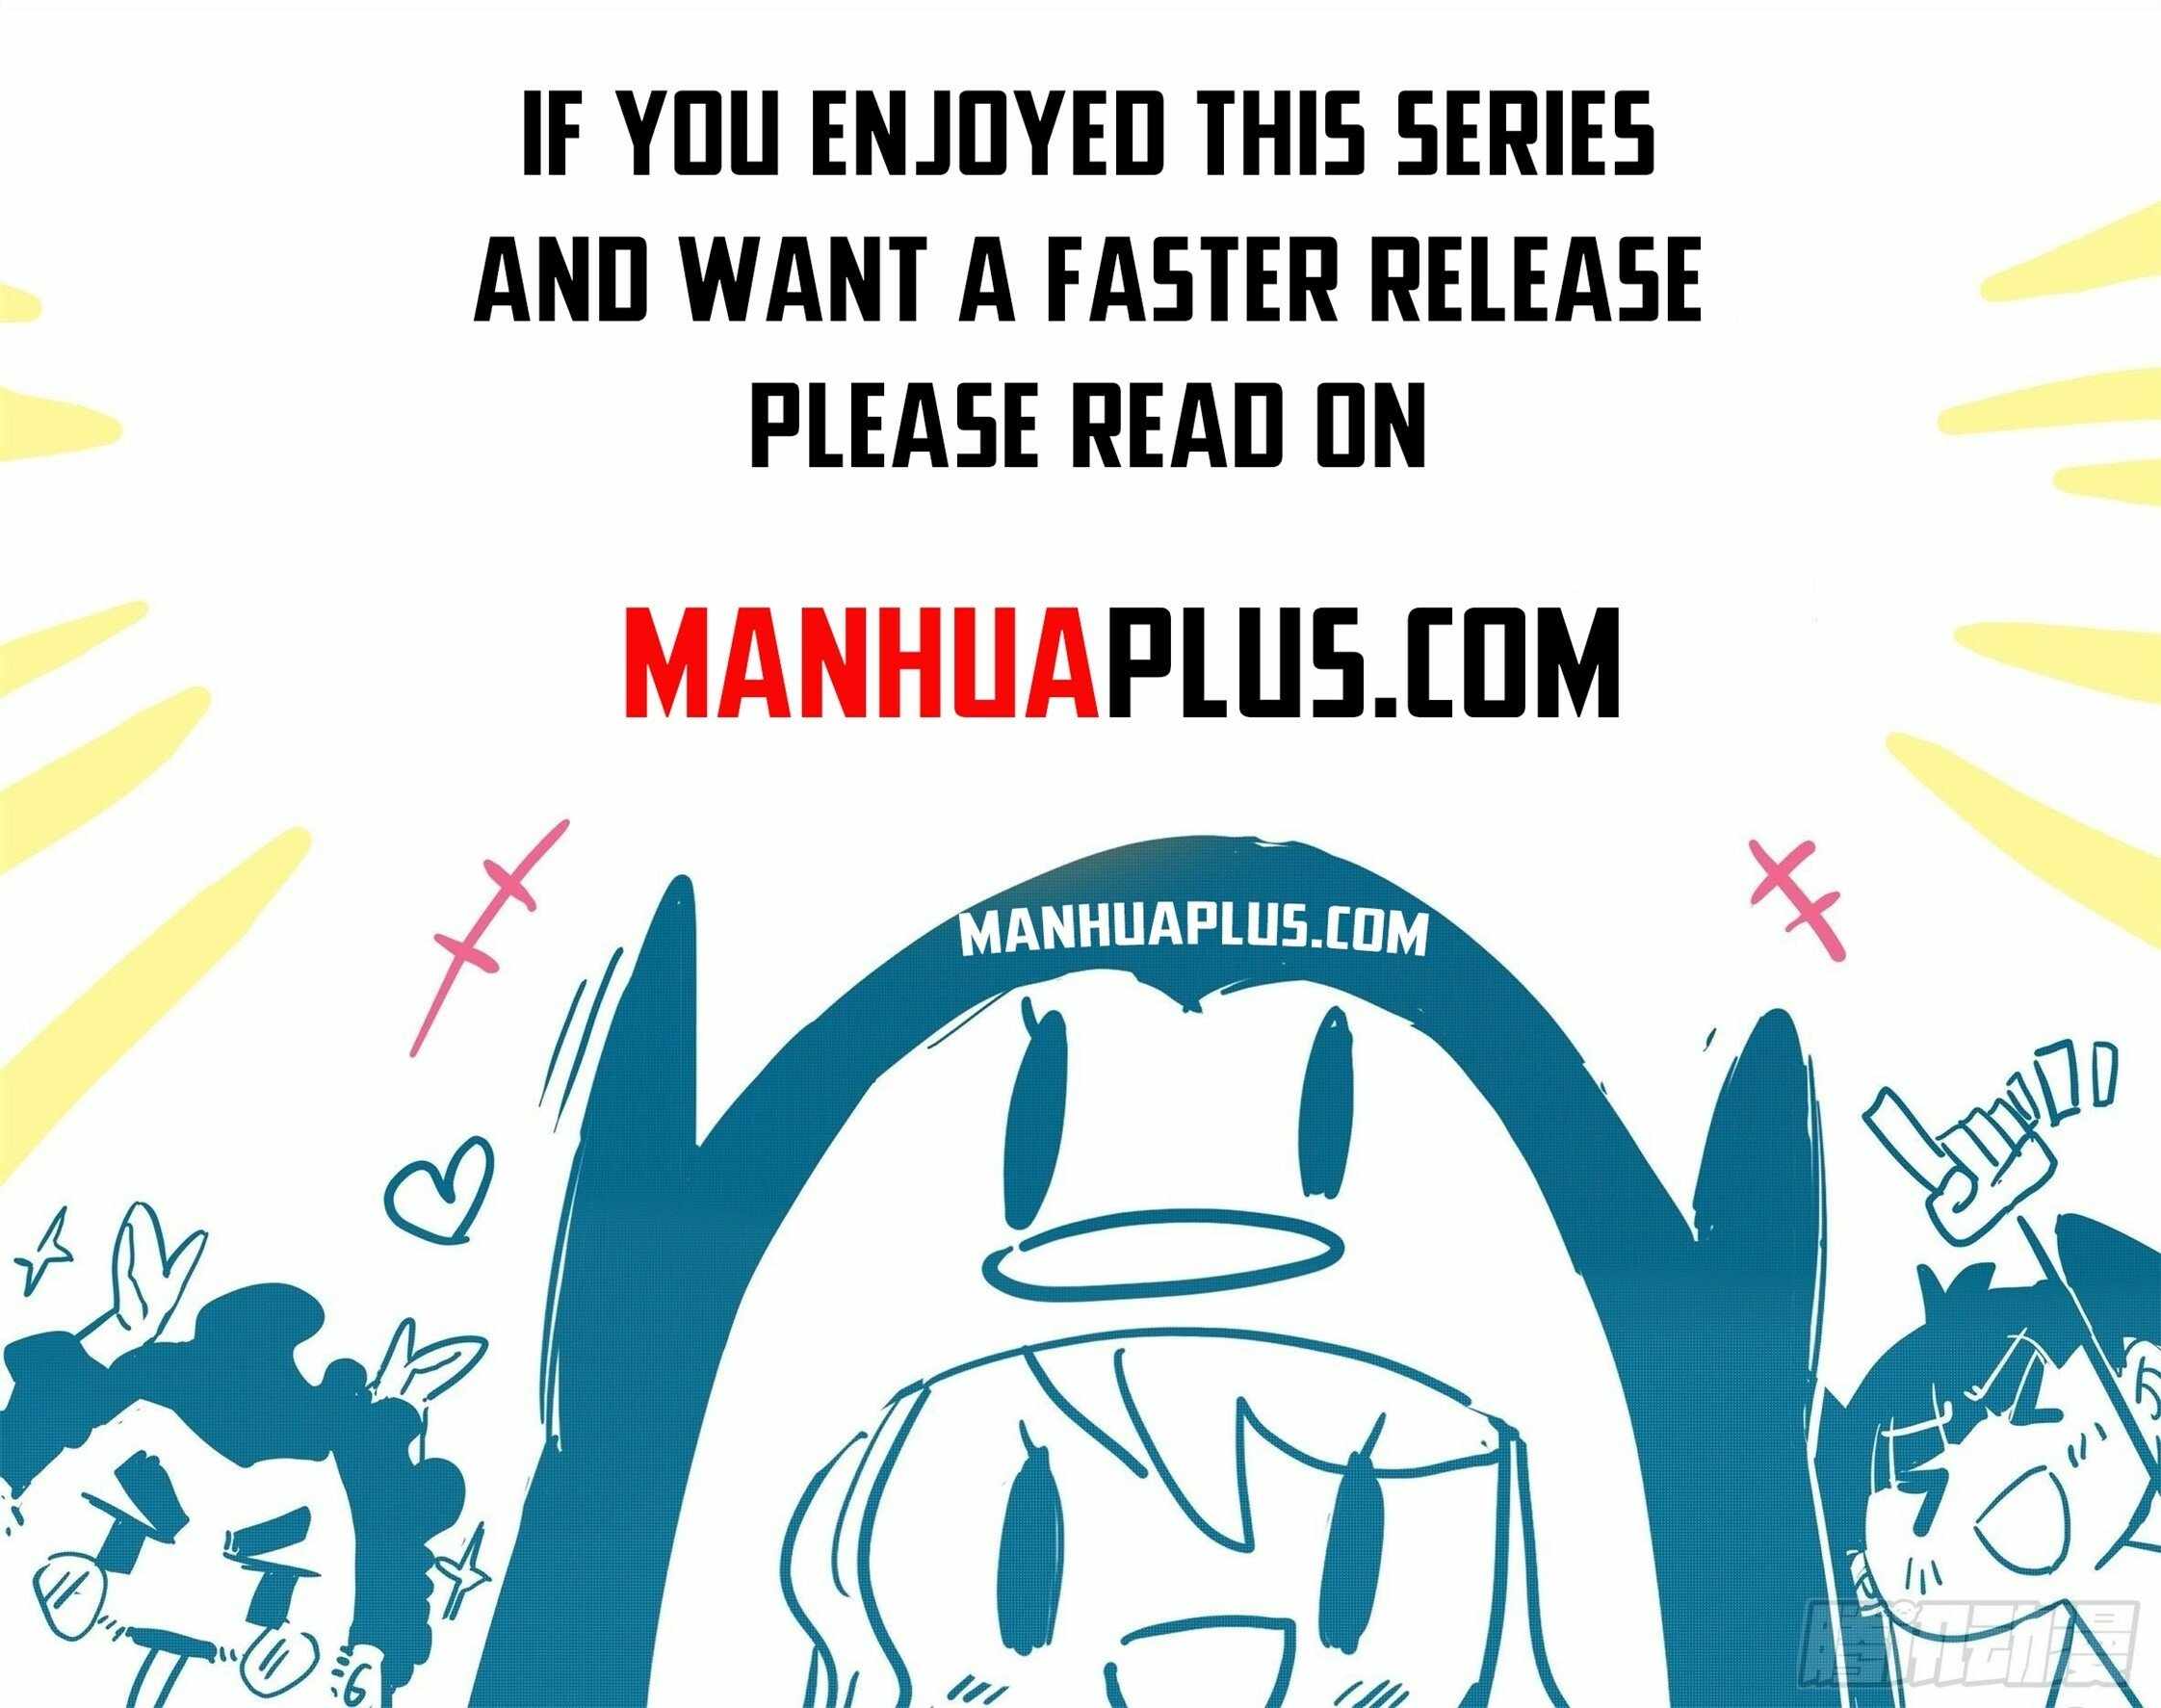 read I’m The Great Immortal Chapter 629 Manga Online Free at Mangabuddy, MangaNato,Manhwatop | MangaSo.com